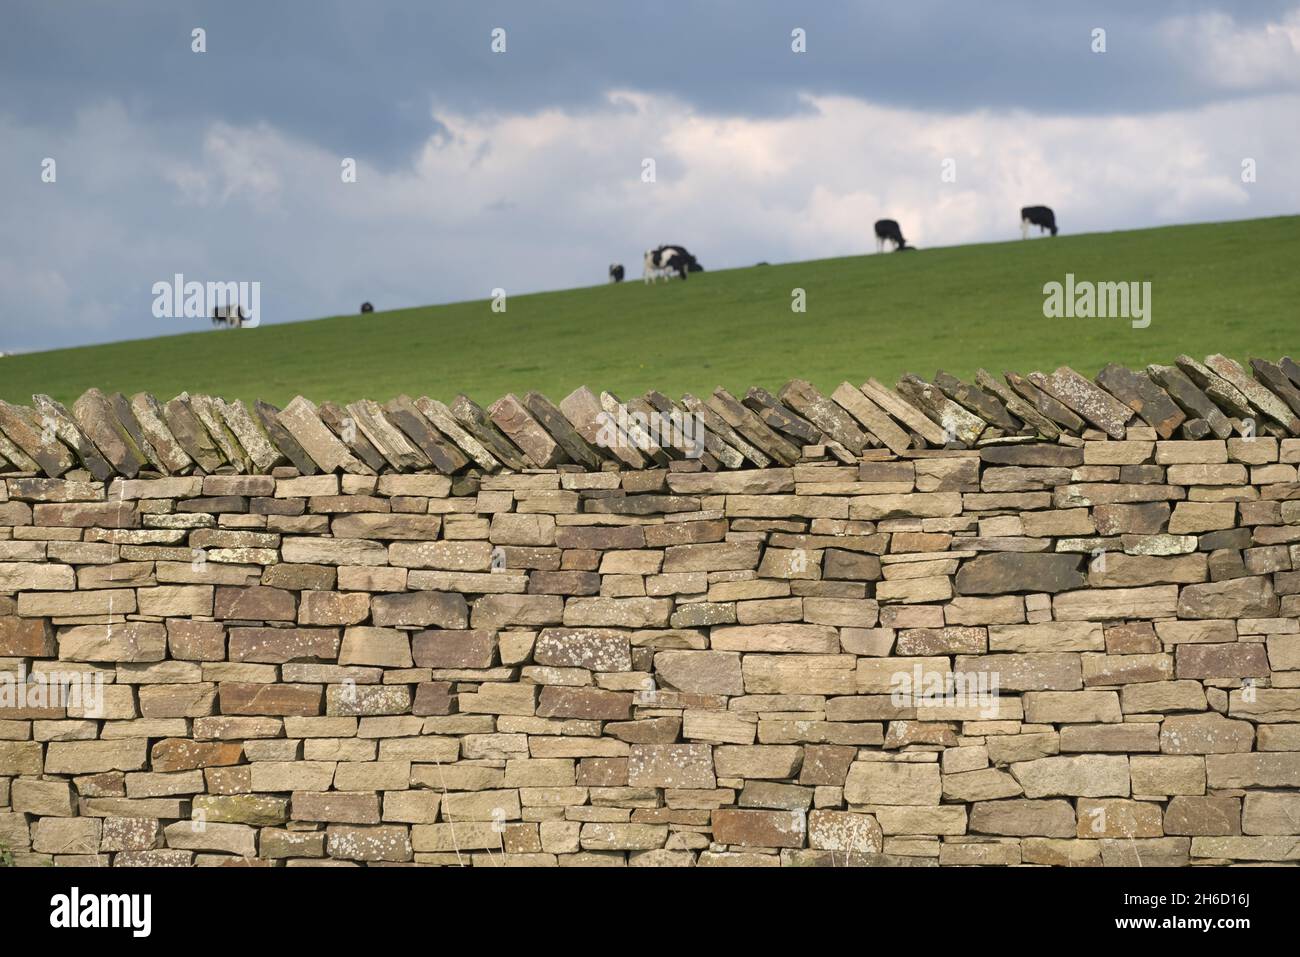 Le mur en pierre sèche, propre et bien fait, brille sous la lumière du soleil, tandis qu'un groupe de bovins frisons Holstein broutent l'herbe en arrière-plan sous des nuages sombres Banque D'Images